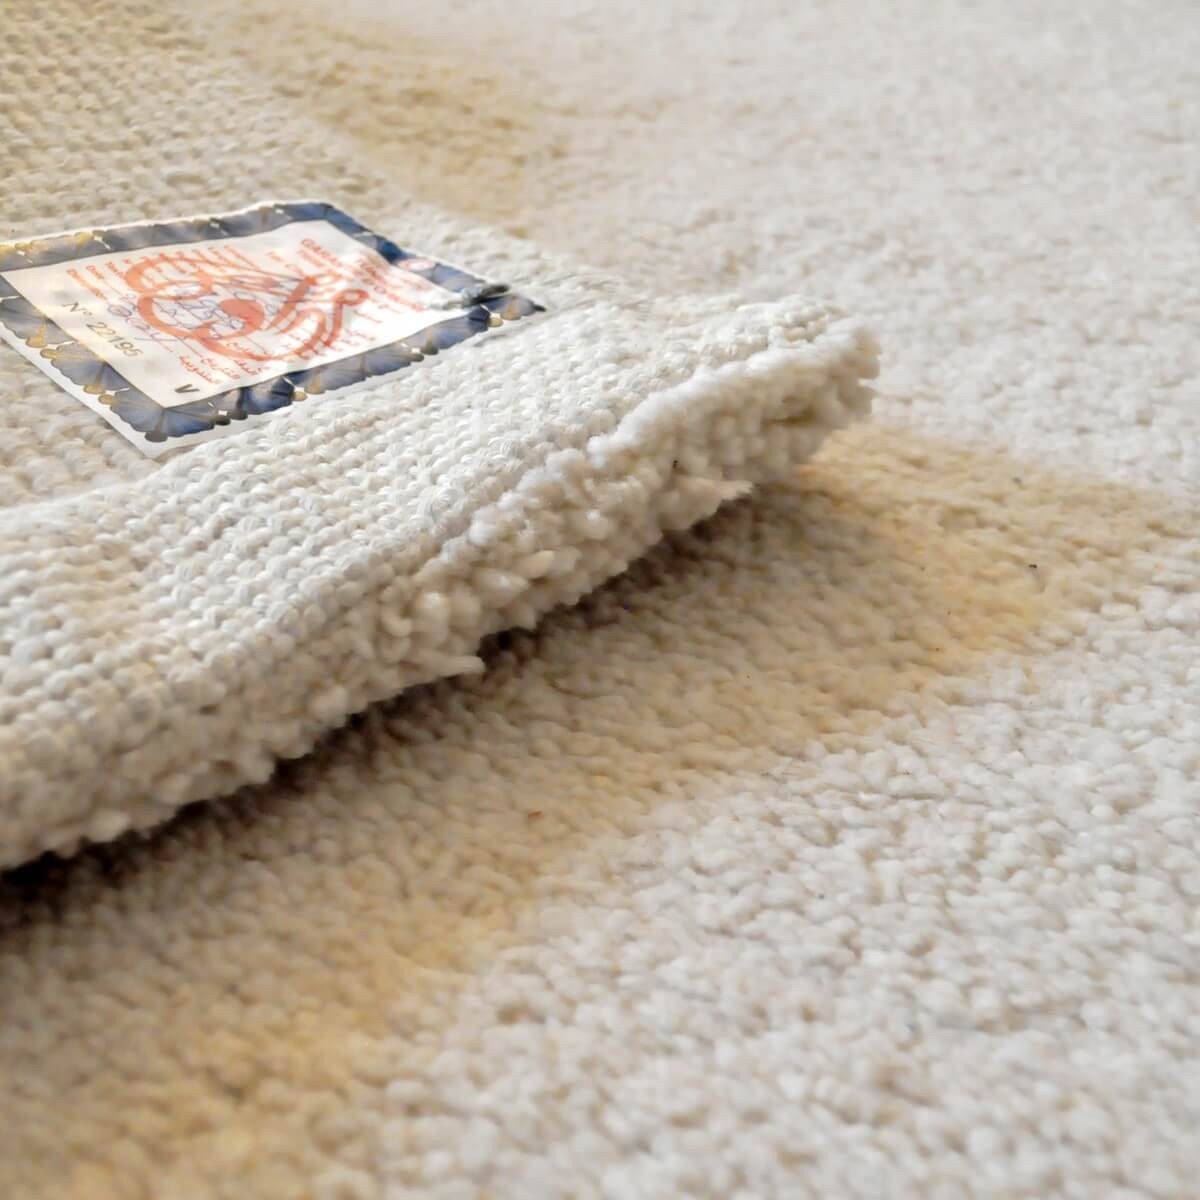 Berber Teppich Teppich Wolle Weiß Faouar 120x190 (Handgefertigt, Tunesien) Tunesischer Berber-Teppich aus weißer Wolle, hohes Ha